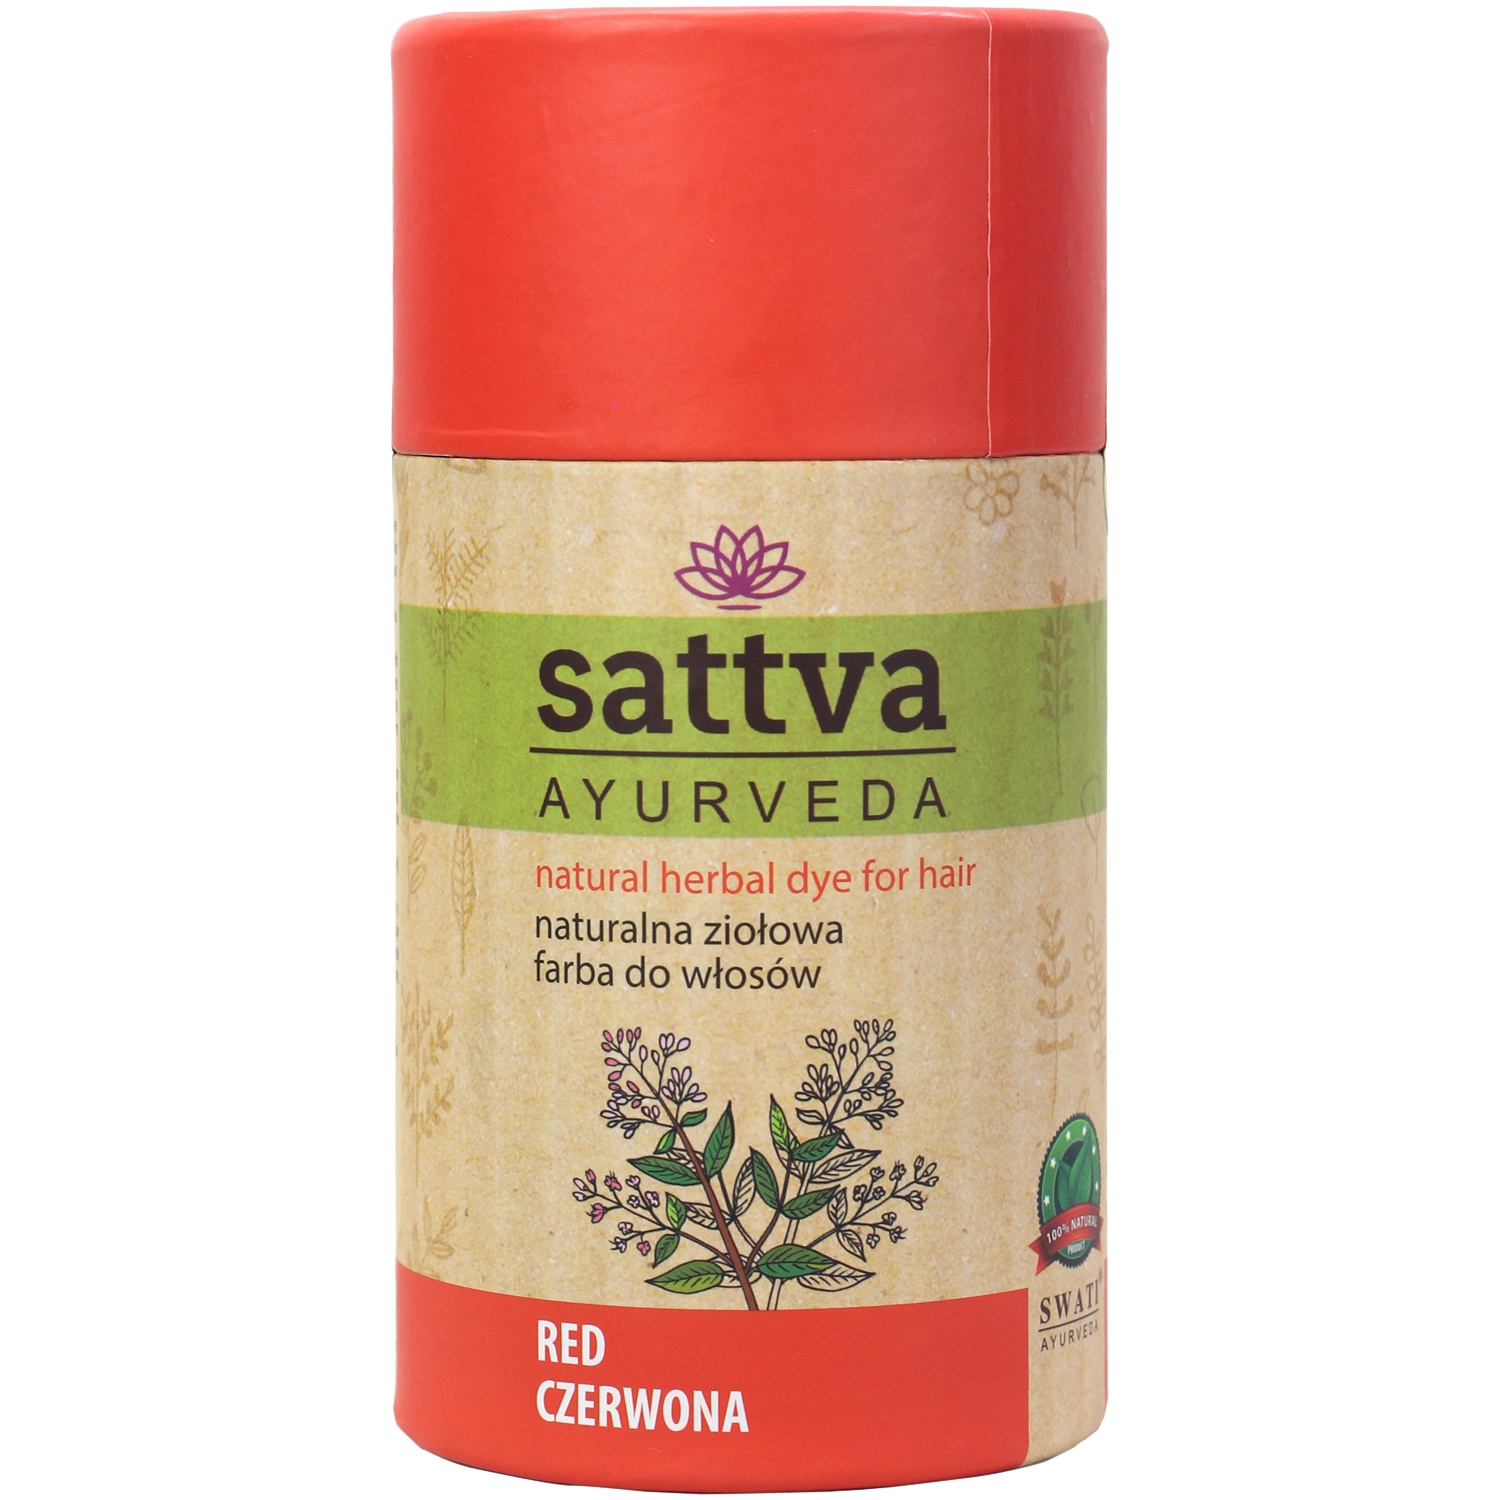 Sattva Red натуральная травяная краска для волос красный, 150 г краска для волос sattva ayurveda 150 гр